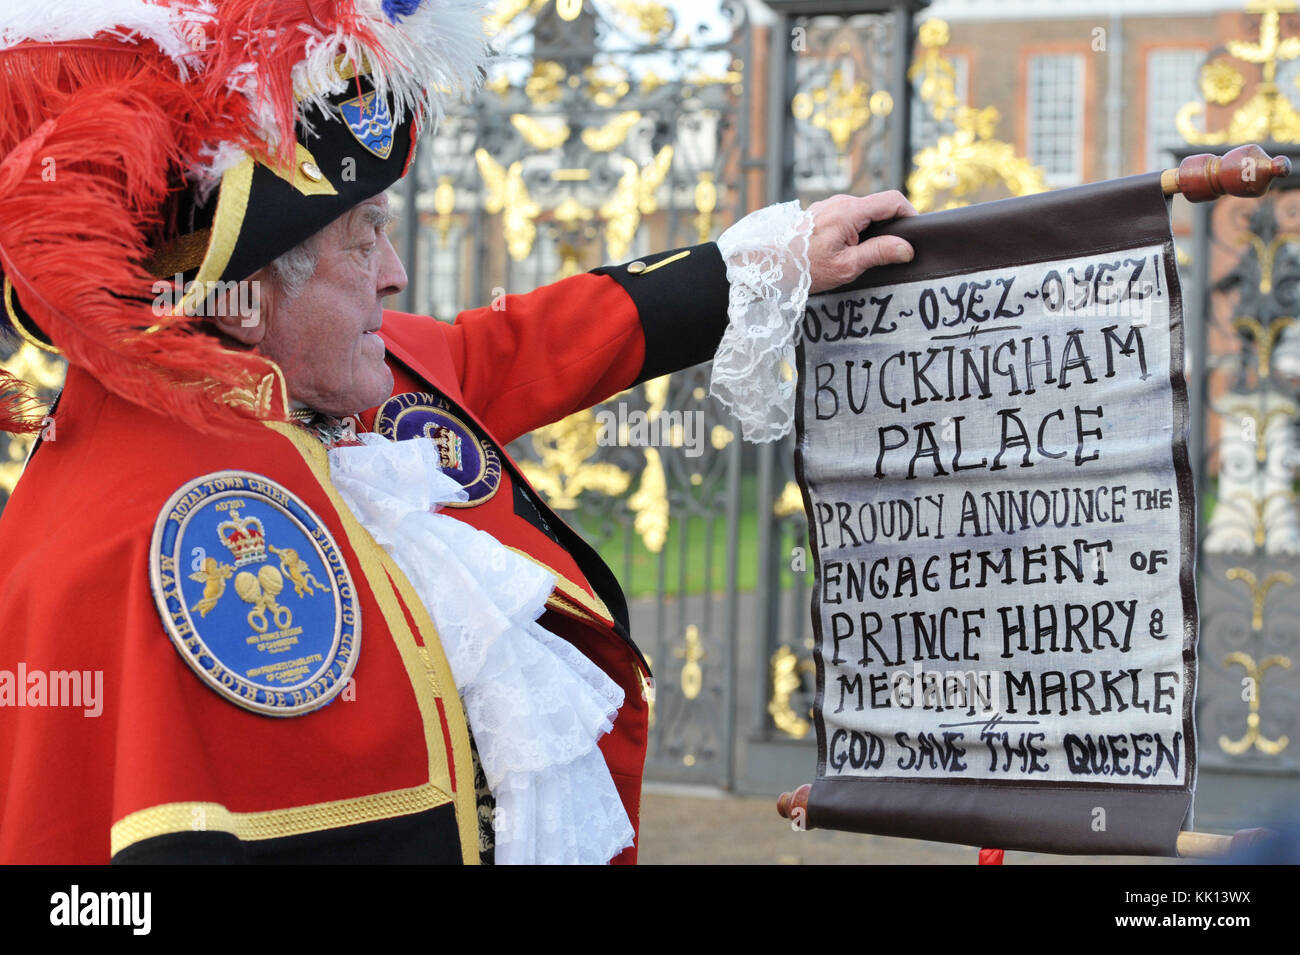 Stadtausrufer Tony Appleton außerhalb der Kensington Palace, London, nachdem es bekannt wurde, dass Prinz Harry und Meghan Markle tätig sind. Stockfoto